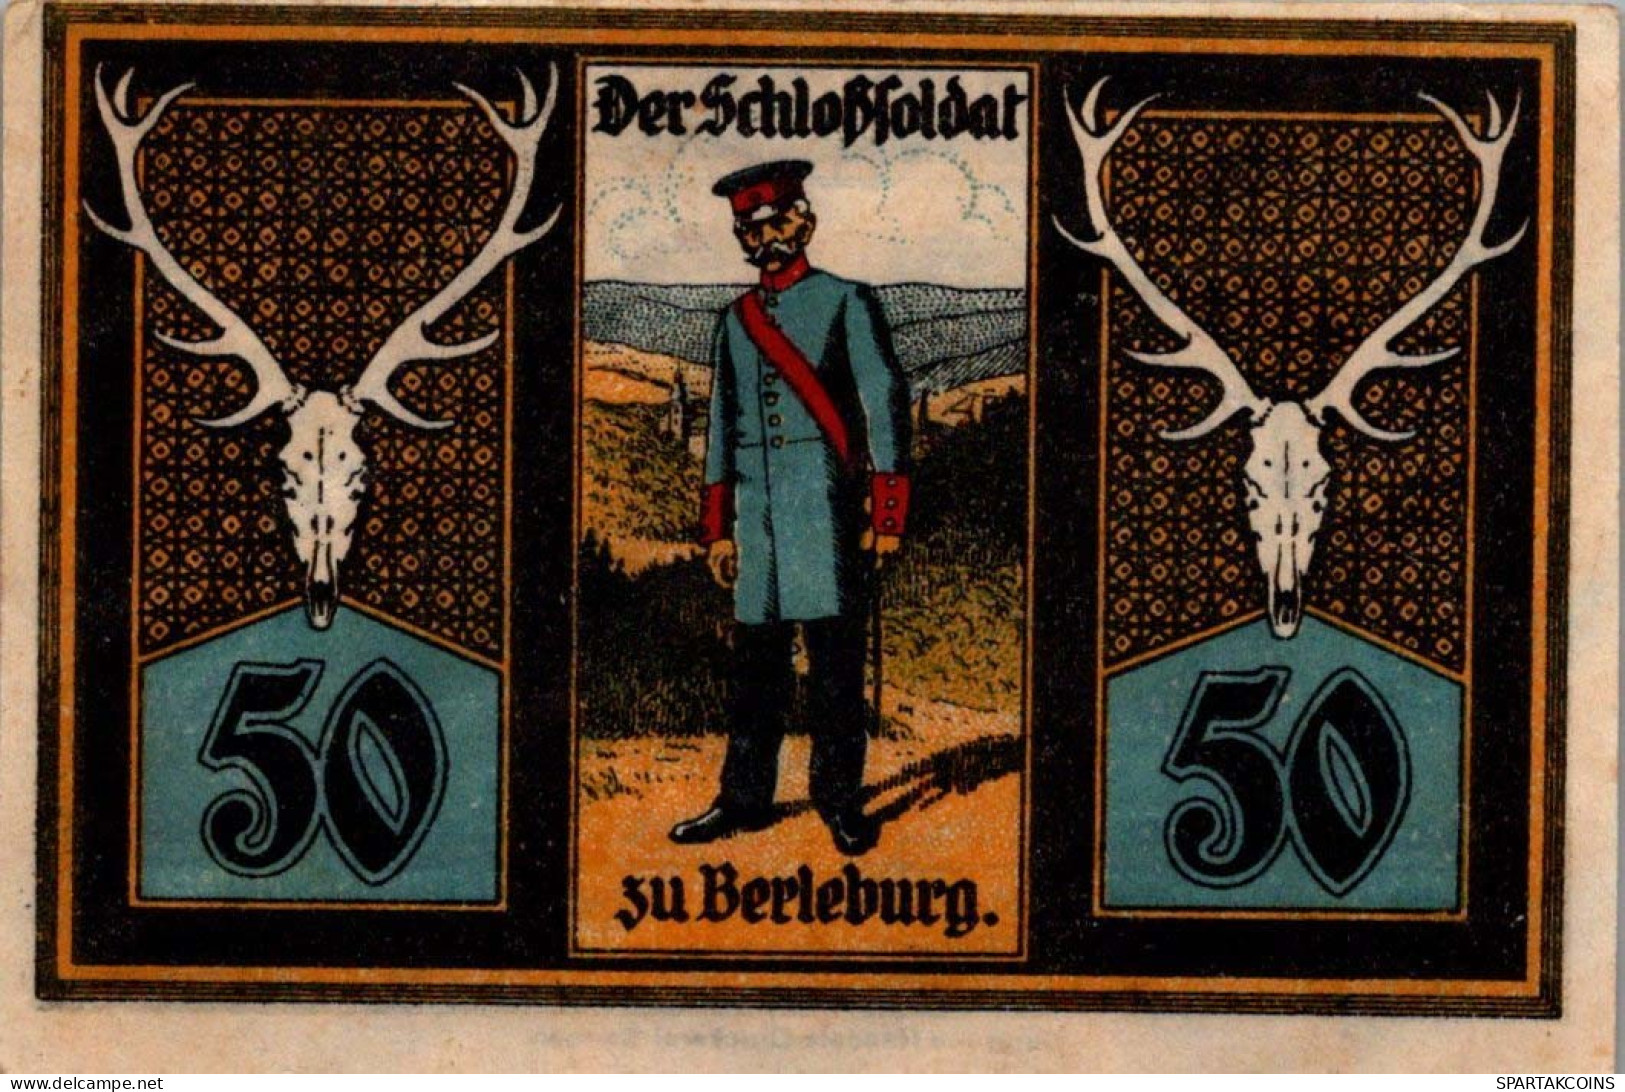 50 PFENNIG 1921 Stadt BERLEBURG Westphalia UNC DEUTSCHLAND Notgeld #PA146 - [11] Lokale Uitgaven